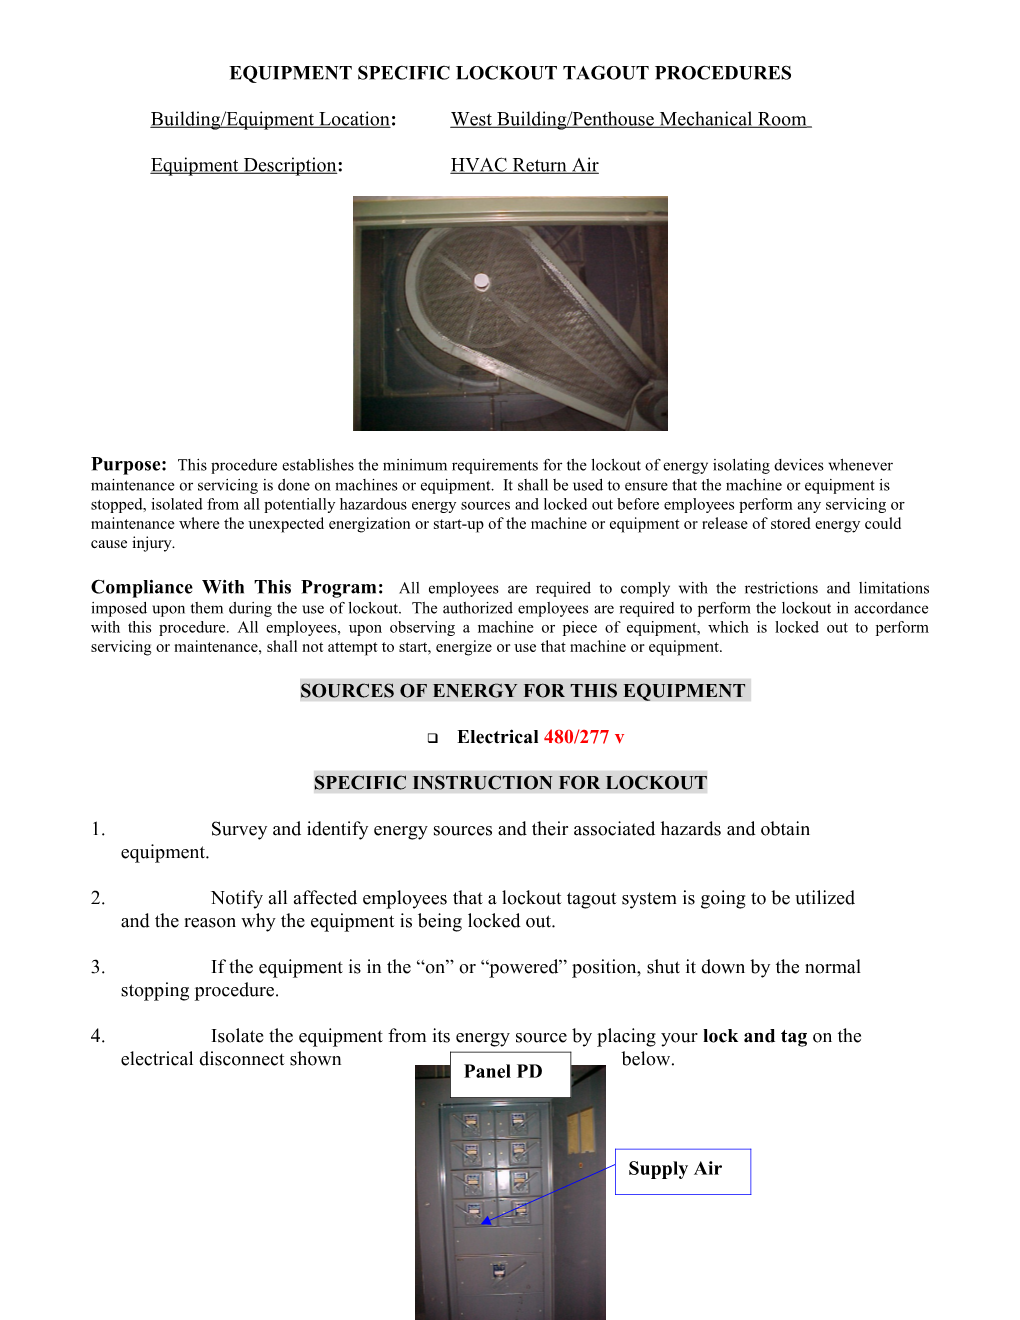 Appendix C - Equipment Specific Lockout Tagout Procedures Form